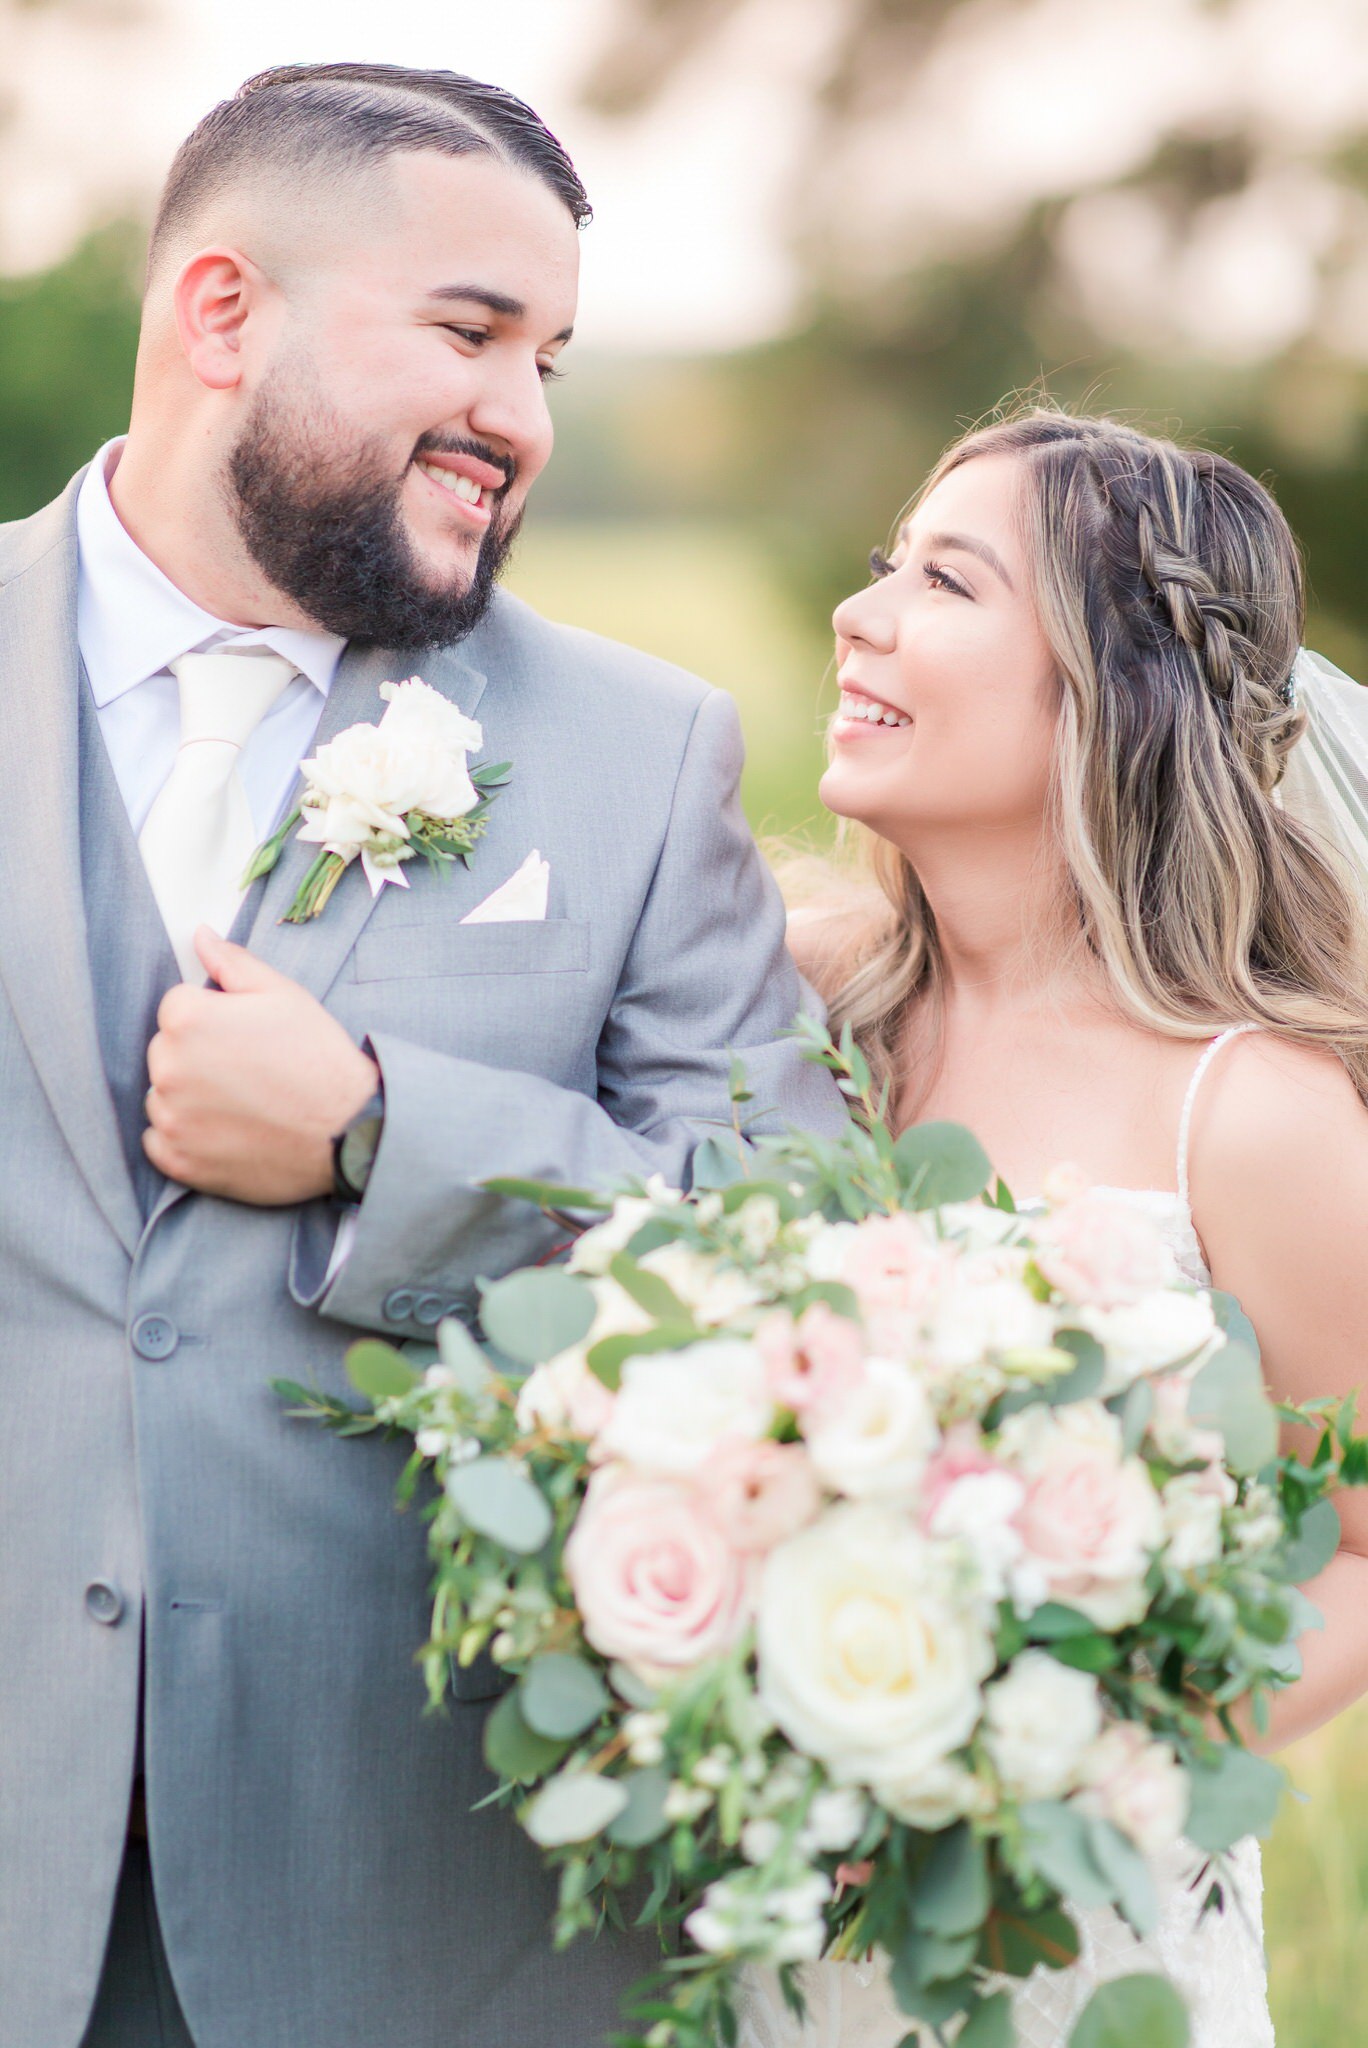 A Blush & Ivory Wedding at Kendall Point in Boerne, TX by Dawn Elizabeth Studios, San Antonio Wedding Photographer